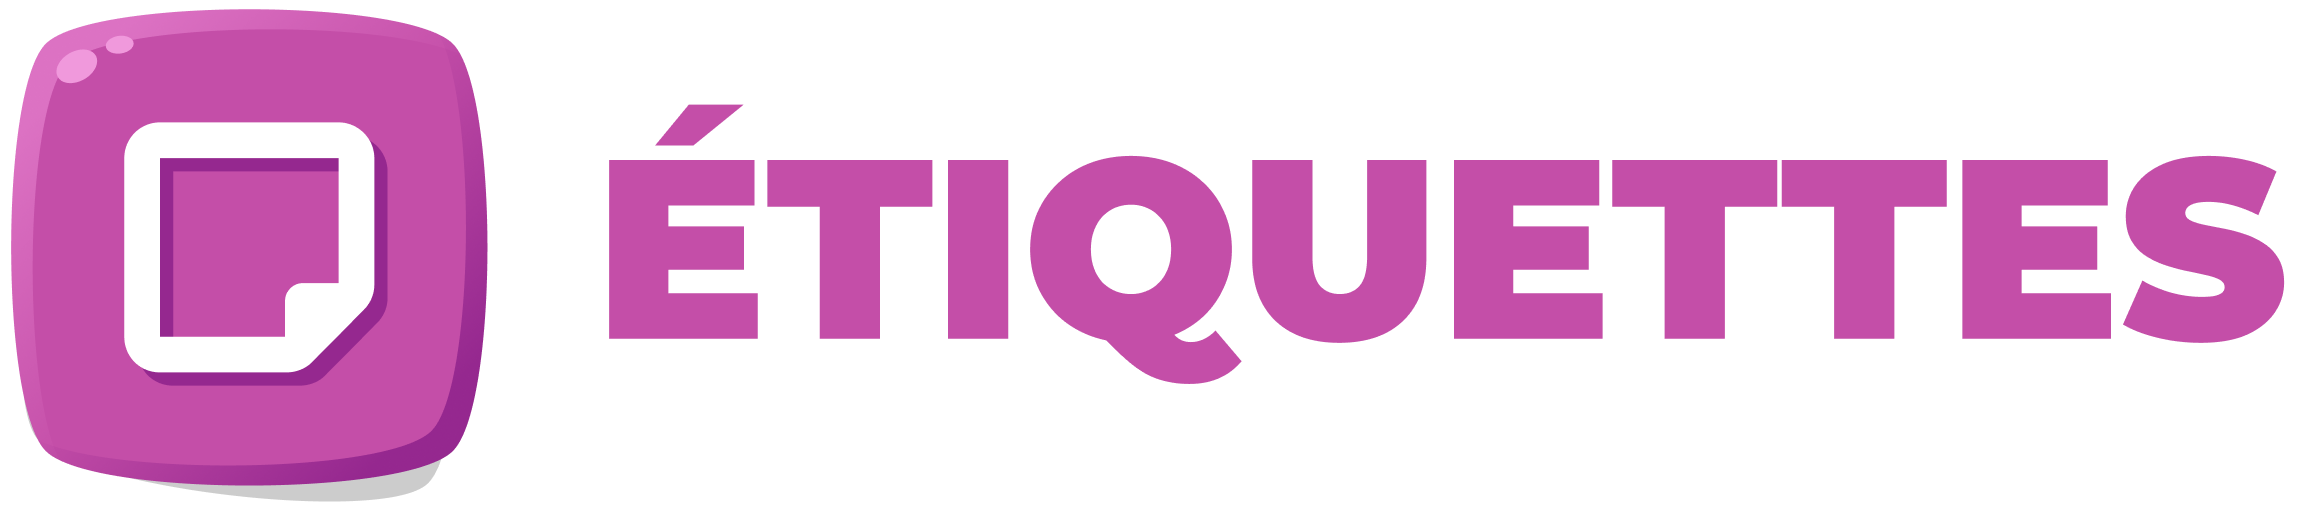 Logo de l'outil Etiquettes